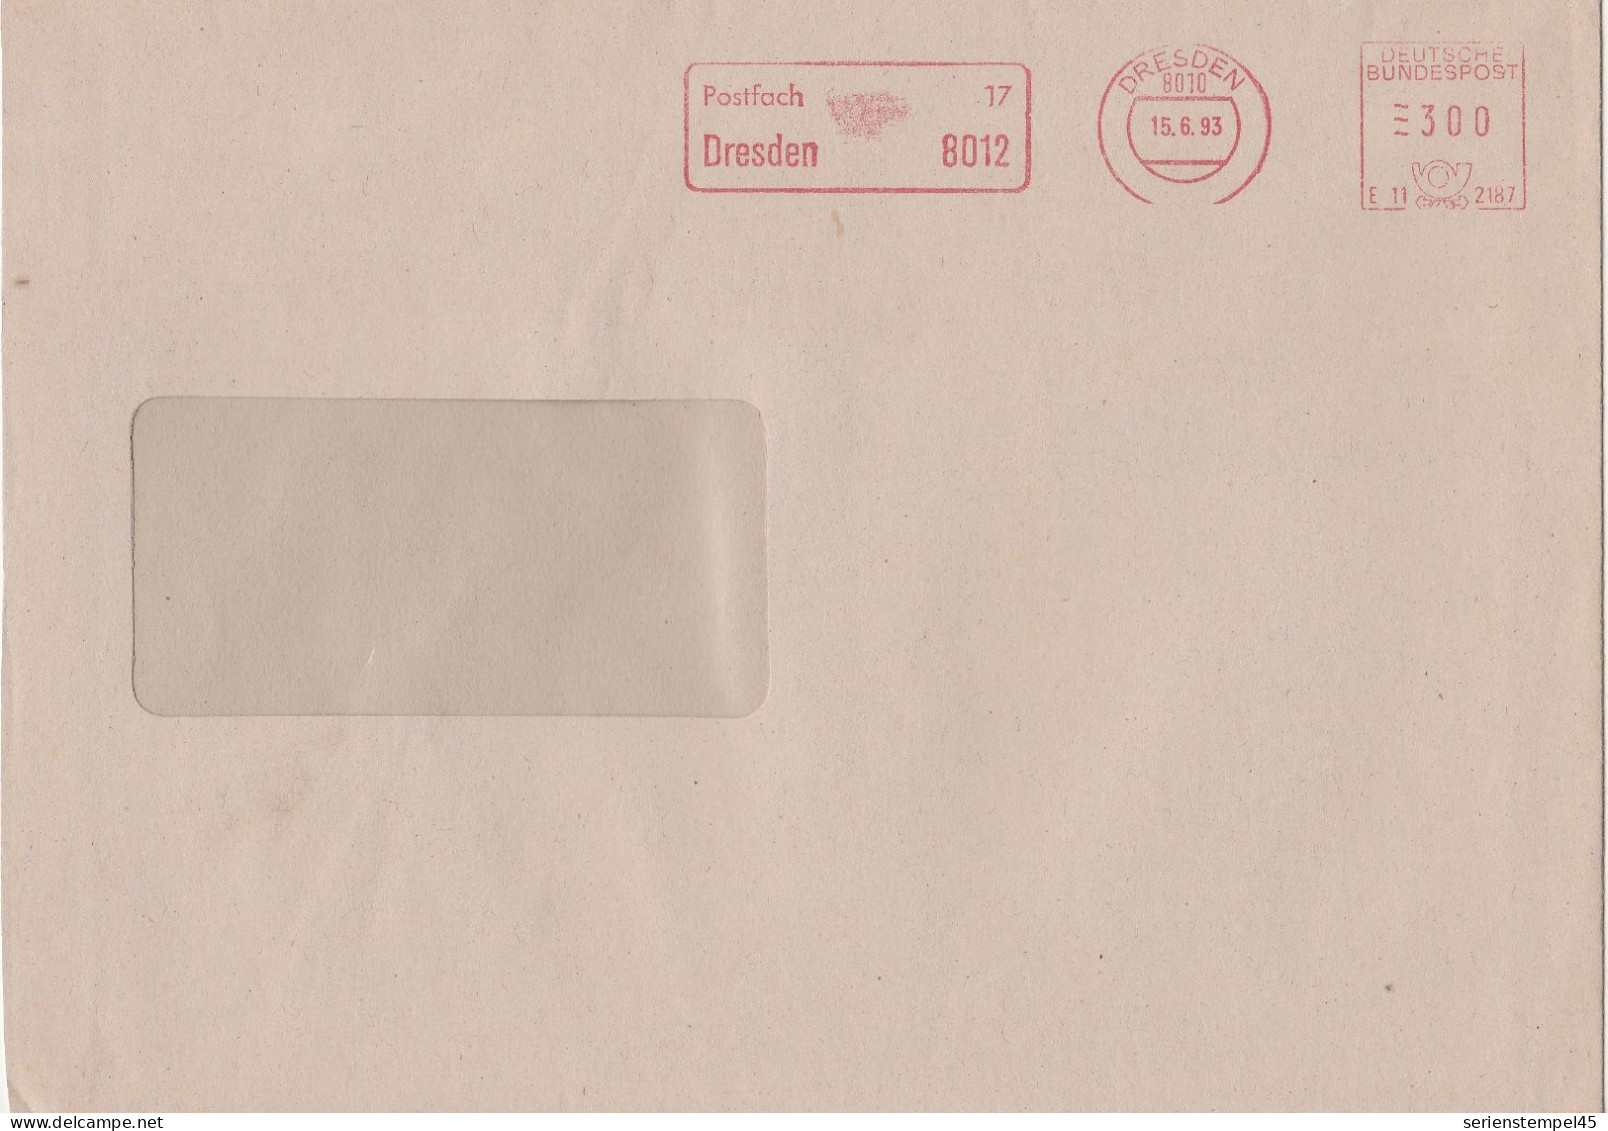 Deutsche Bundespost Brief Mit Freistempel VGO PLZ Oben Dresden 1993 Postfach 17 E11 2187 - Maschinenstempel (EMA)